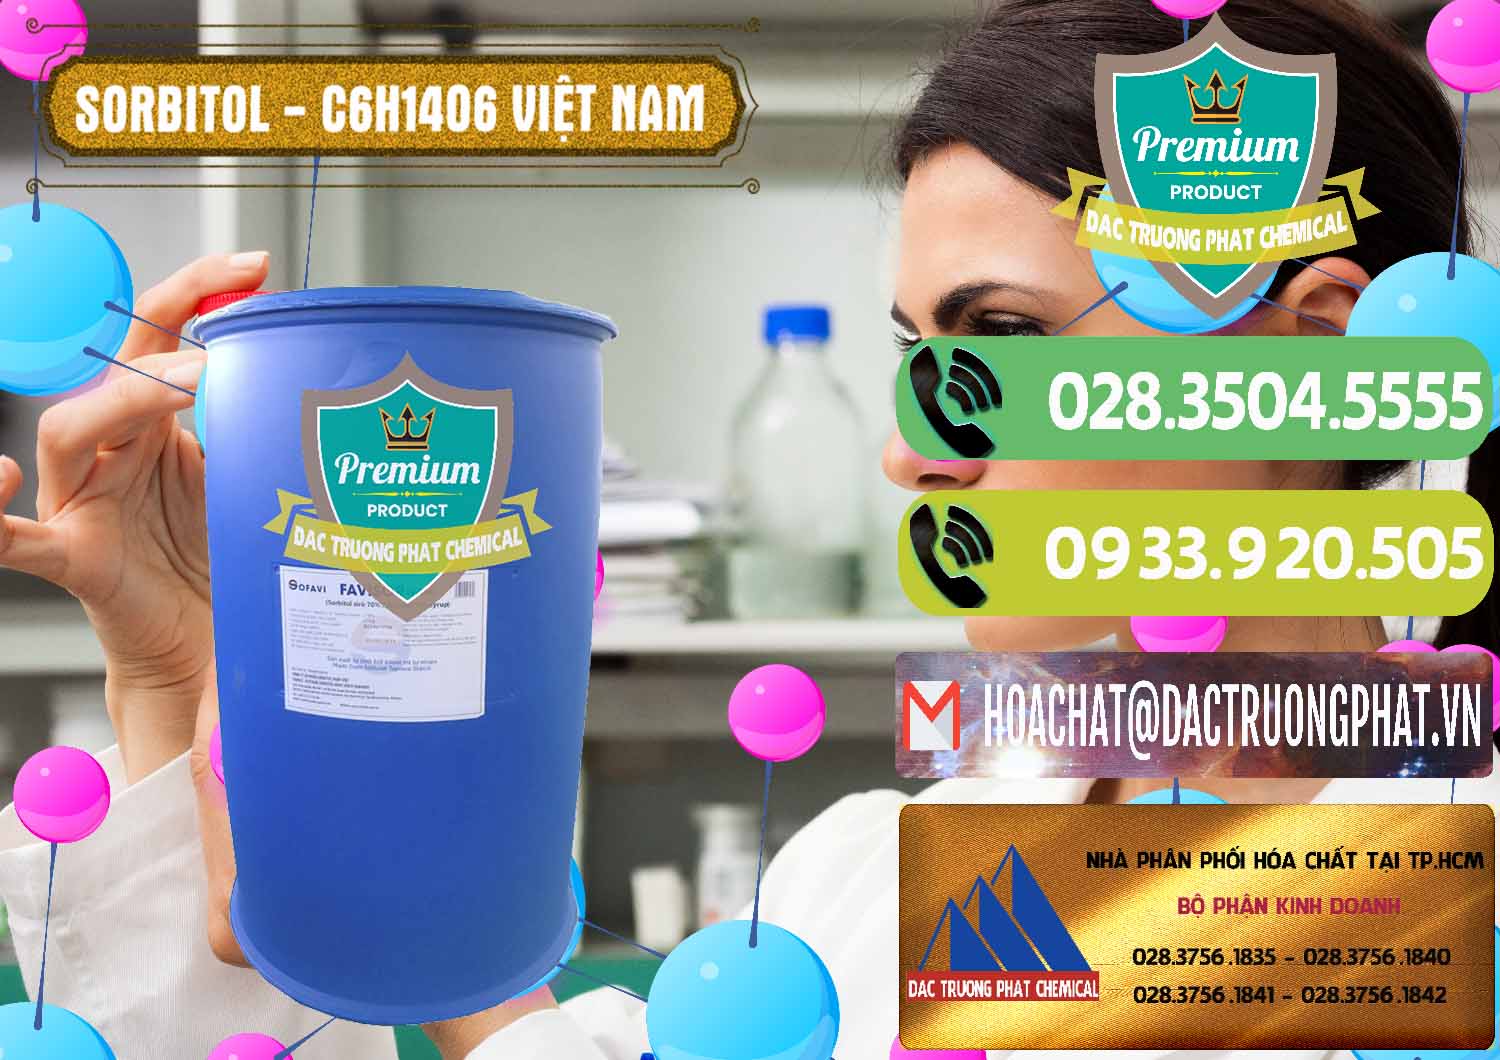 Chuyên cung ứng - phân phối Sorbitol - C6H14O6 Lỏng 70% Food Grade Việt Nam - 0438 - Cty chuyên kinh doanh - bán hóa chất tại TP.HCM - hoachatmientay.vn